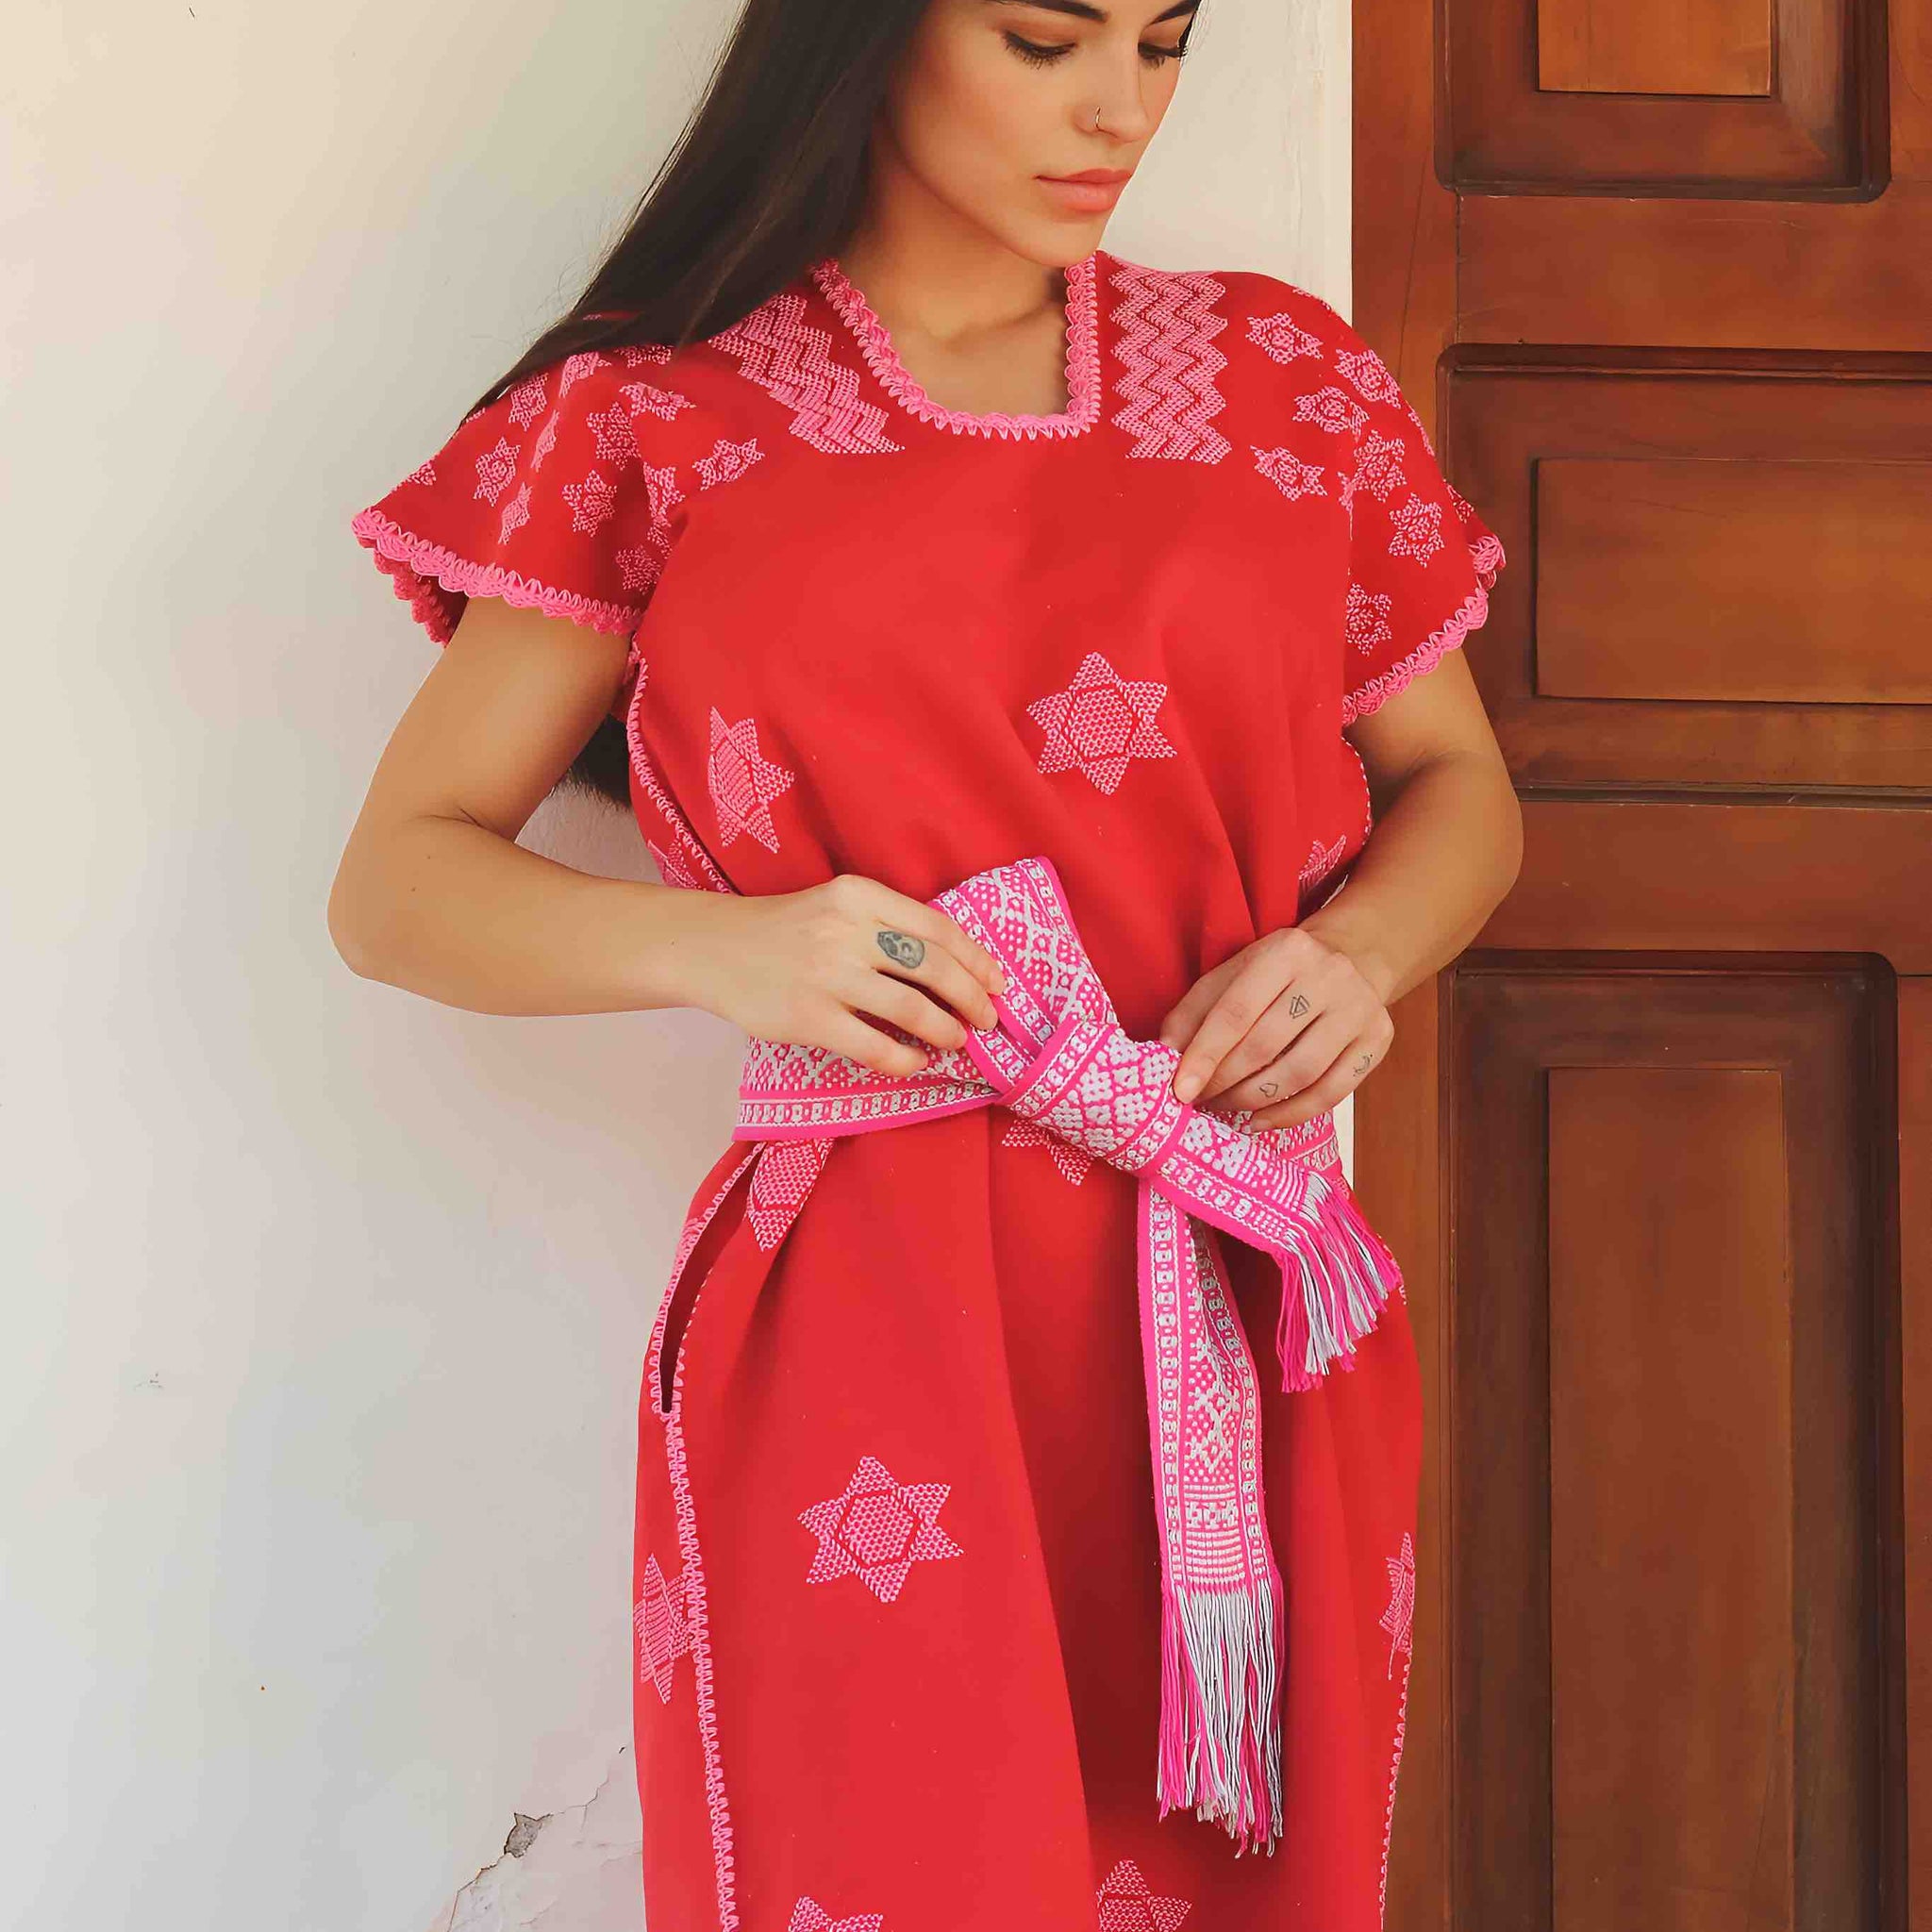 Huipil Dress San Juan red with stars